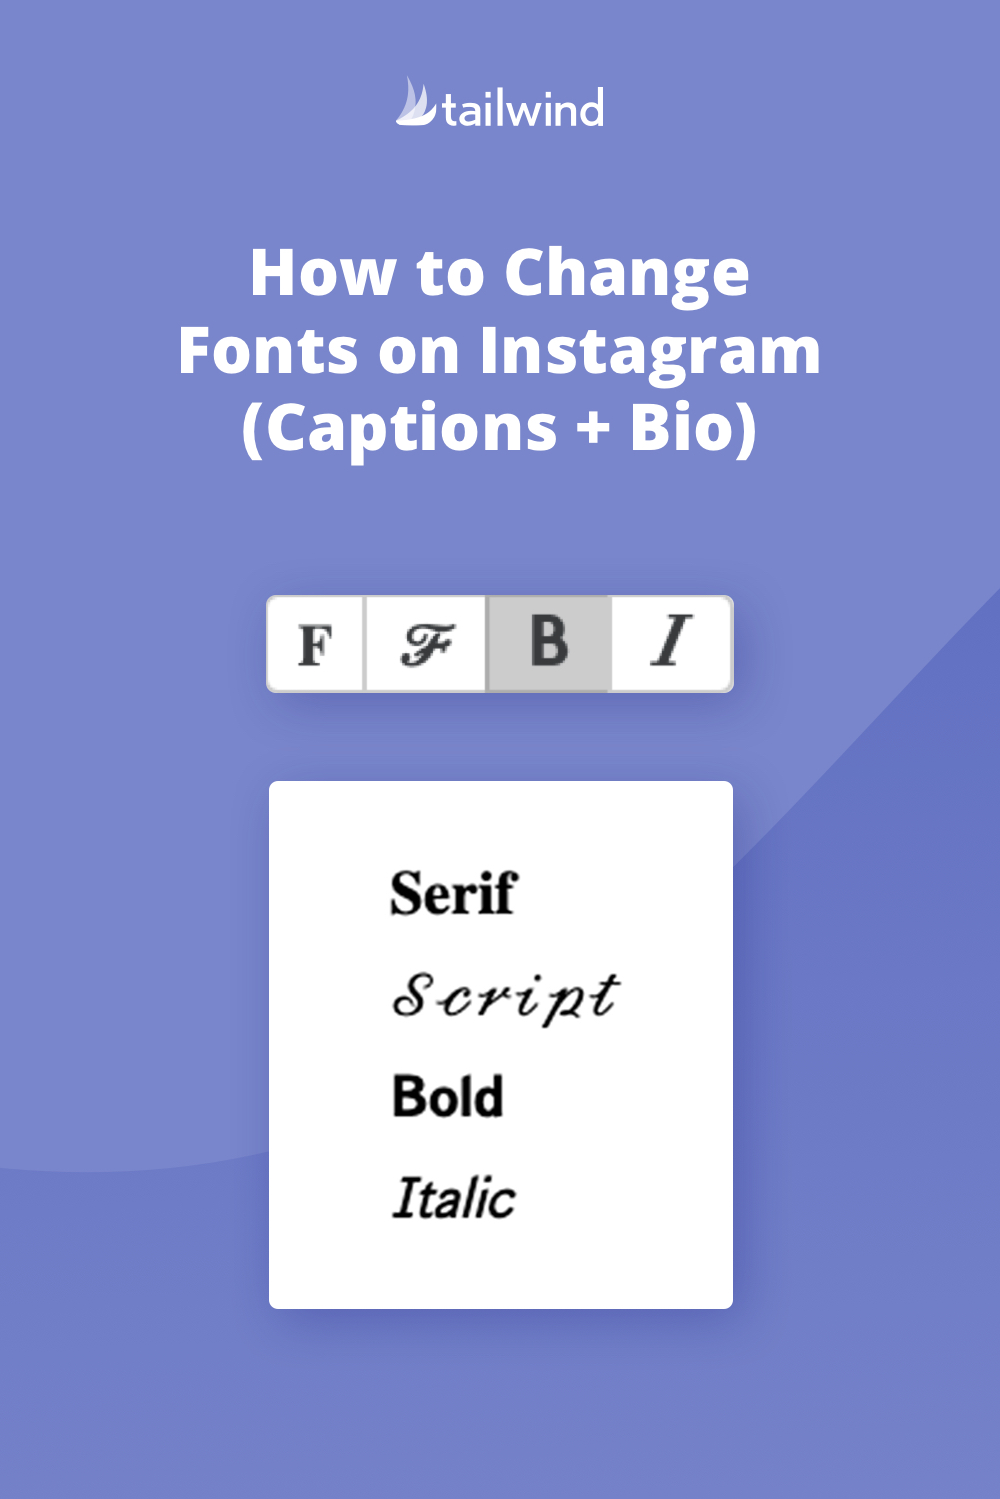 Bạn sẽ không còn phải nhàm chán với font chữ cũ trong Instagram nữa! Ở năm 2024 này, Instagram đã cập nhật nhiều font chữ mới và thú vị cho bạn lựa chọn. Bạn có thể thay đổi font chữ vừa trong tiêu đề lẫn phần giới thiệu của bài viết, tạo nên nhiều phong cách khác nhau cho hình ảnh của mình.